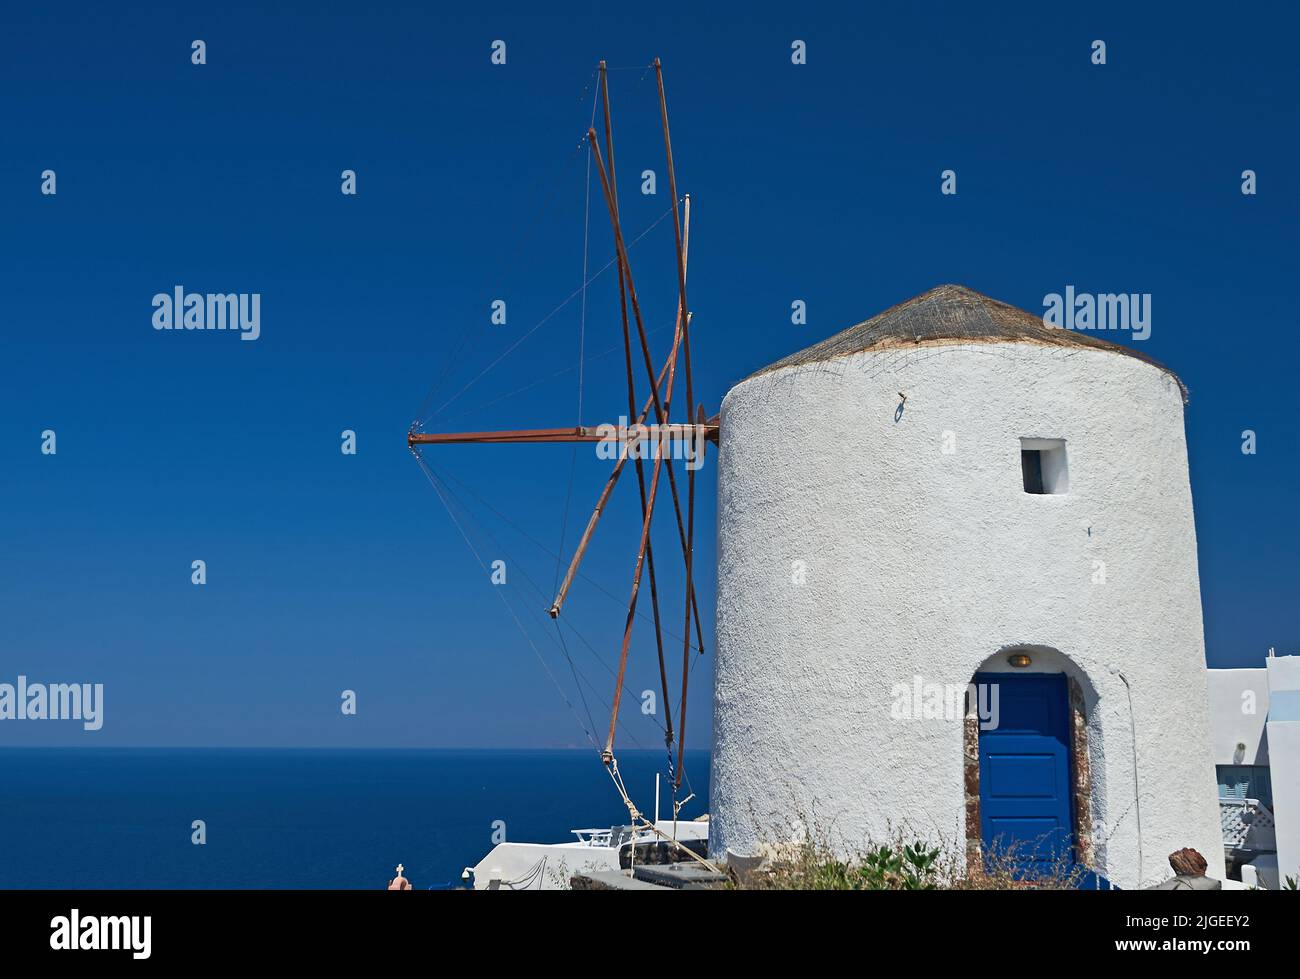 Oia, oder Ia und weiß gewaschen Windmühle auf der Insel Santorini, Teil der Kykladen-Inseln vor dem griechischen Festland Stockfoto